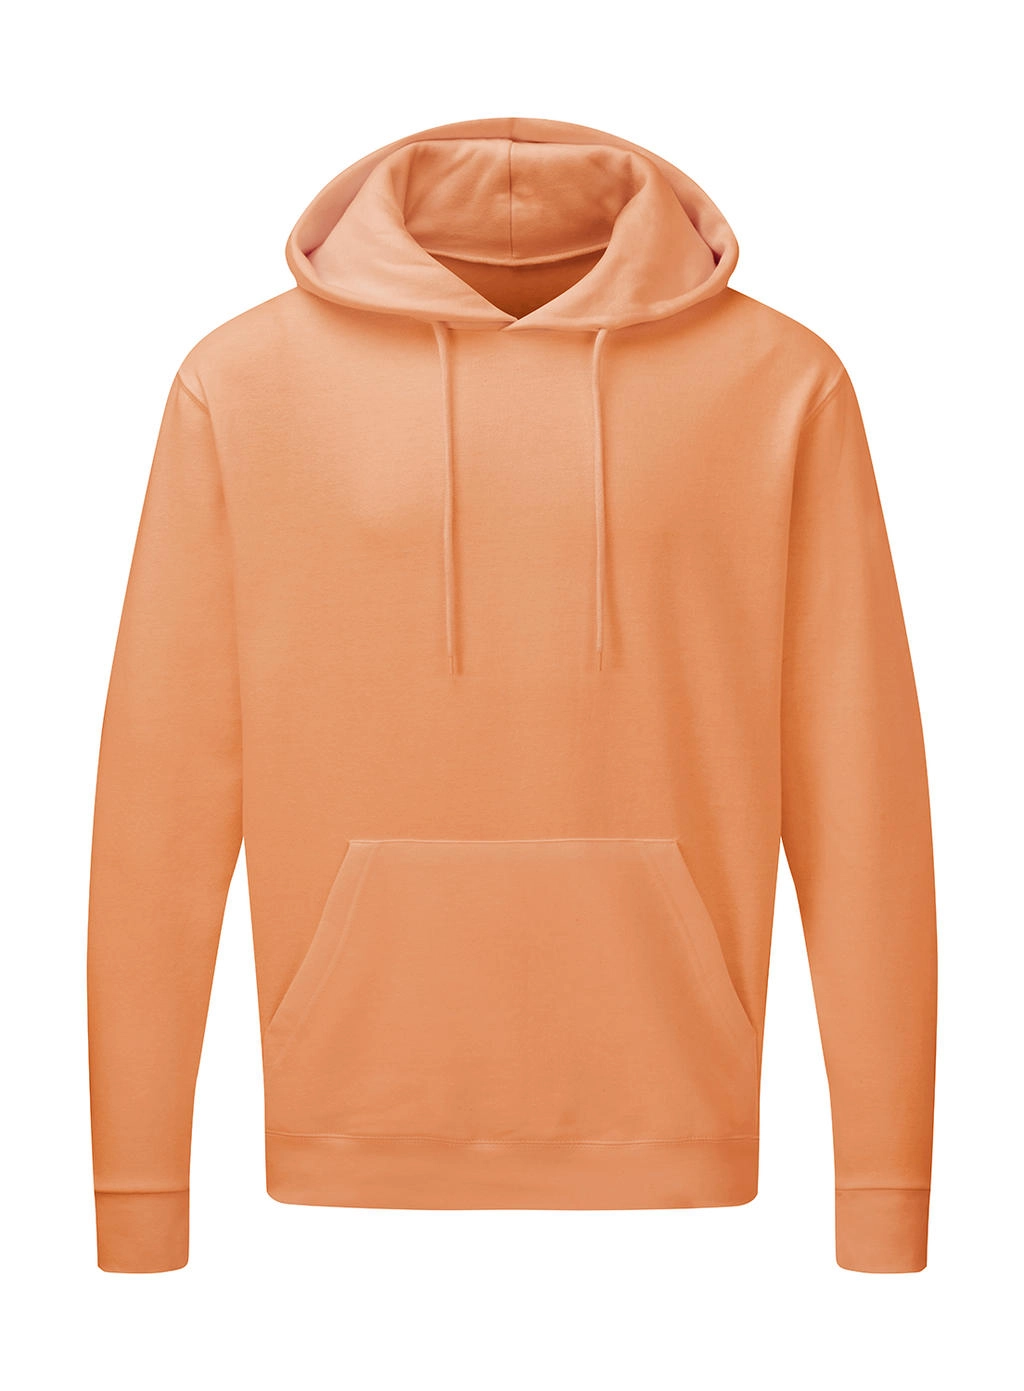 Hooded Sweatshirt Men zum Besticken und Bedrucken in der Farbe Cantaloupe mit Ihren Logo, Schriftzug oder Motiv.